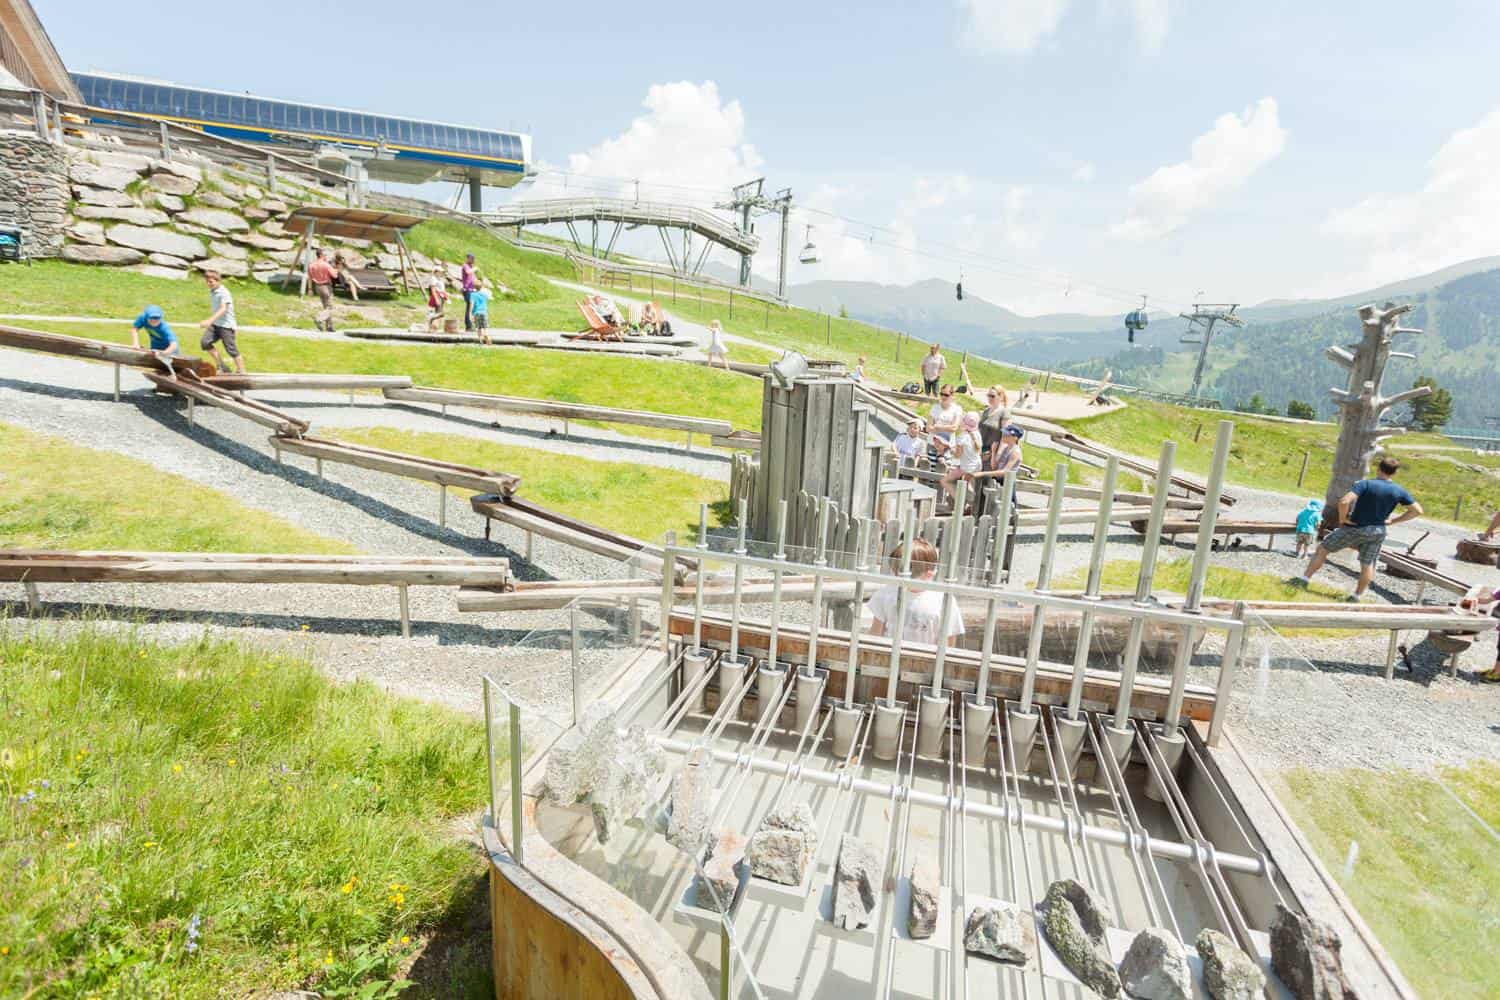 Kinderspielplatz Nocky's Almzeit auf der Turracher Höhe in Kärnten an der Grenze zu Steiermark in Österreich